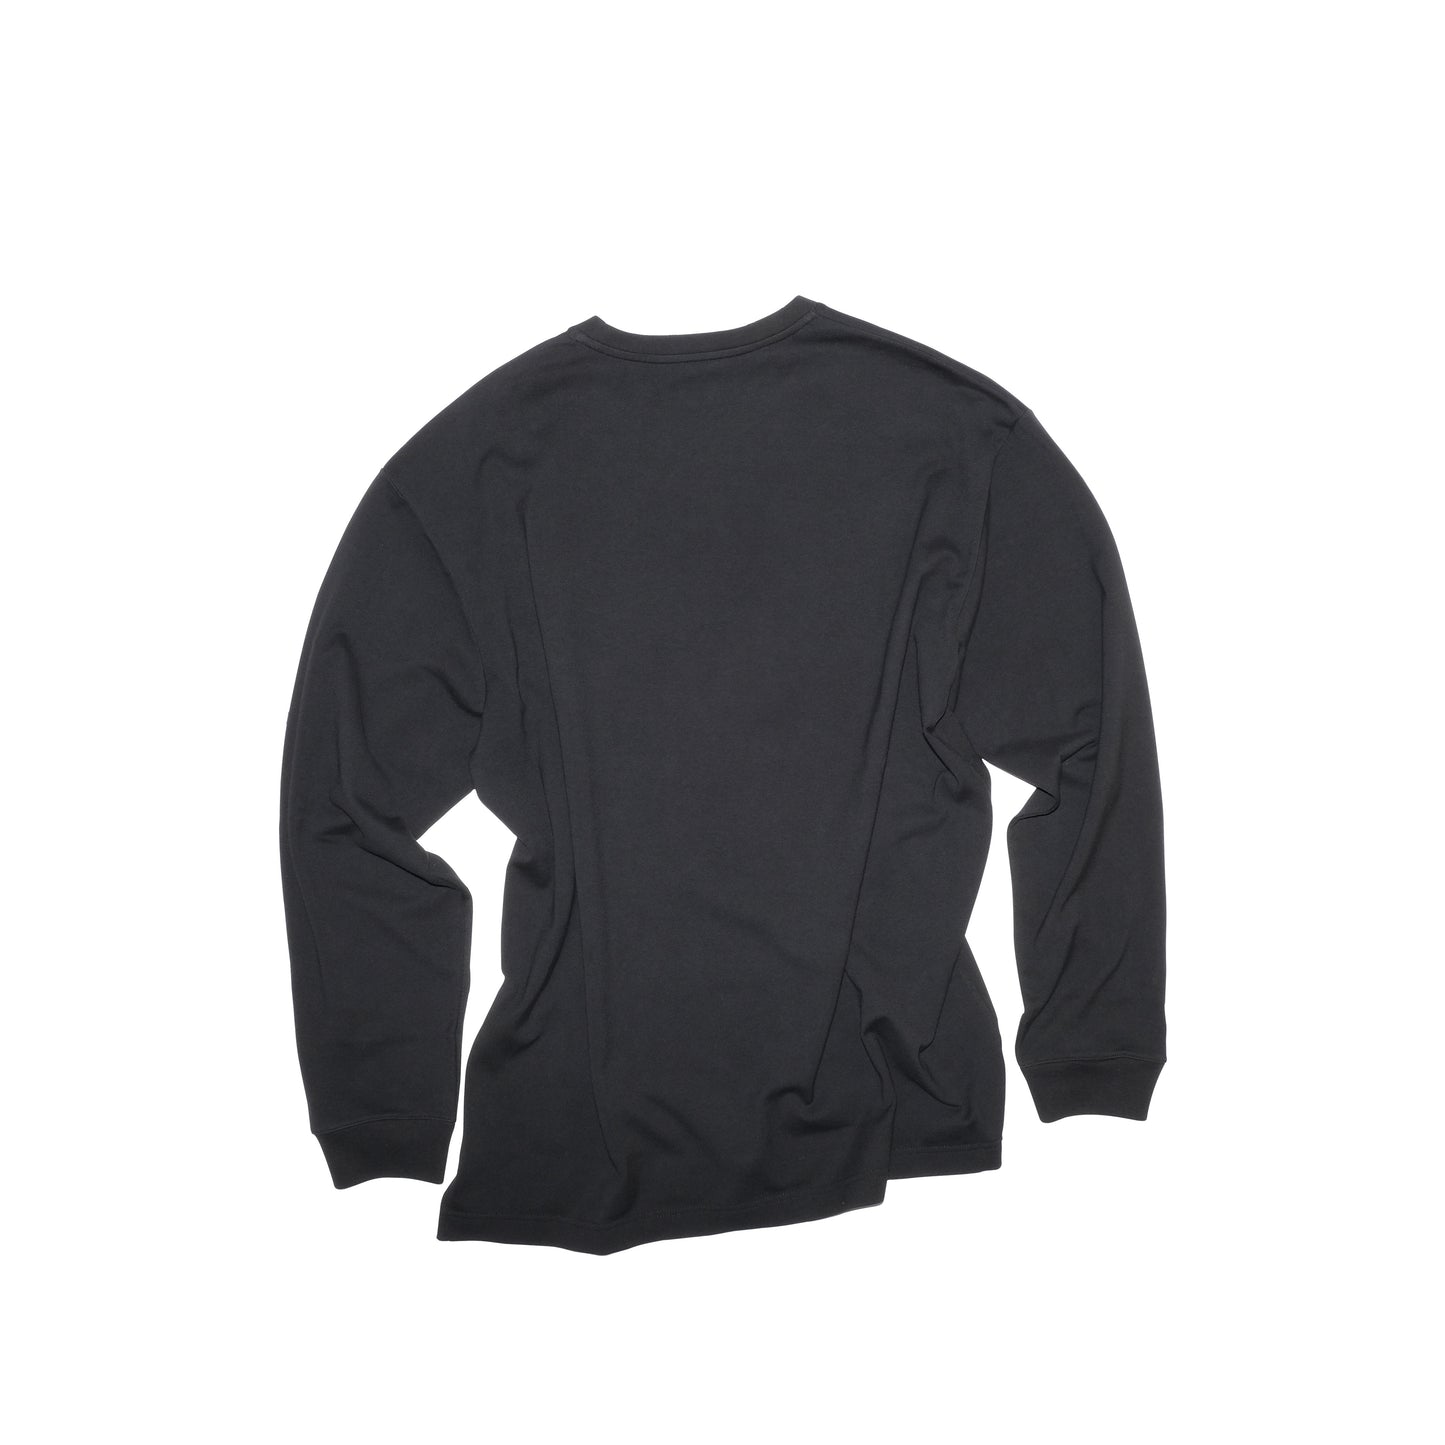 Robert Long Sleeve Cotton T Shirt Black